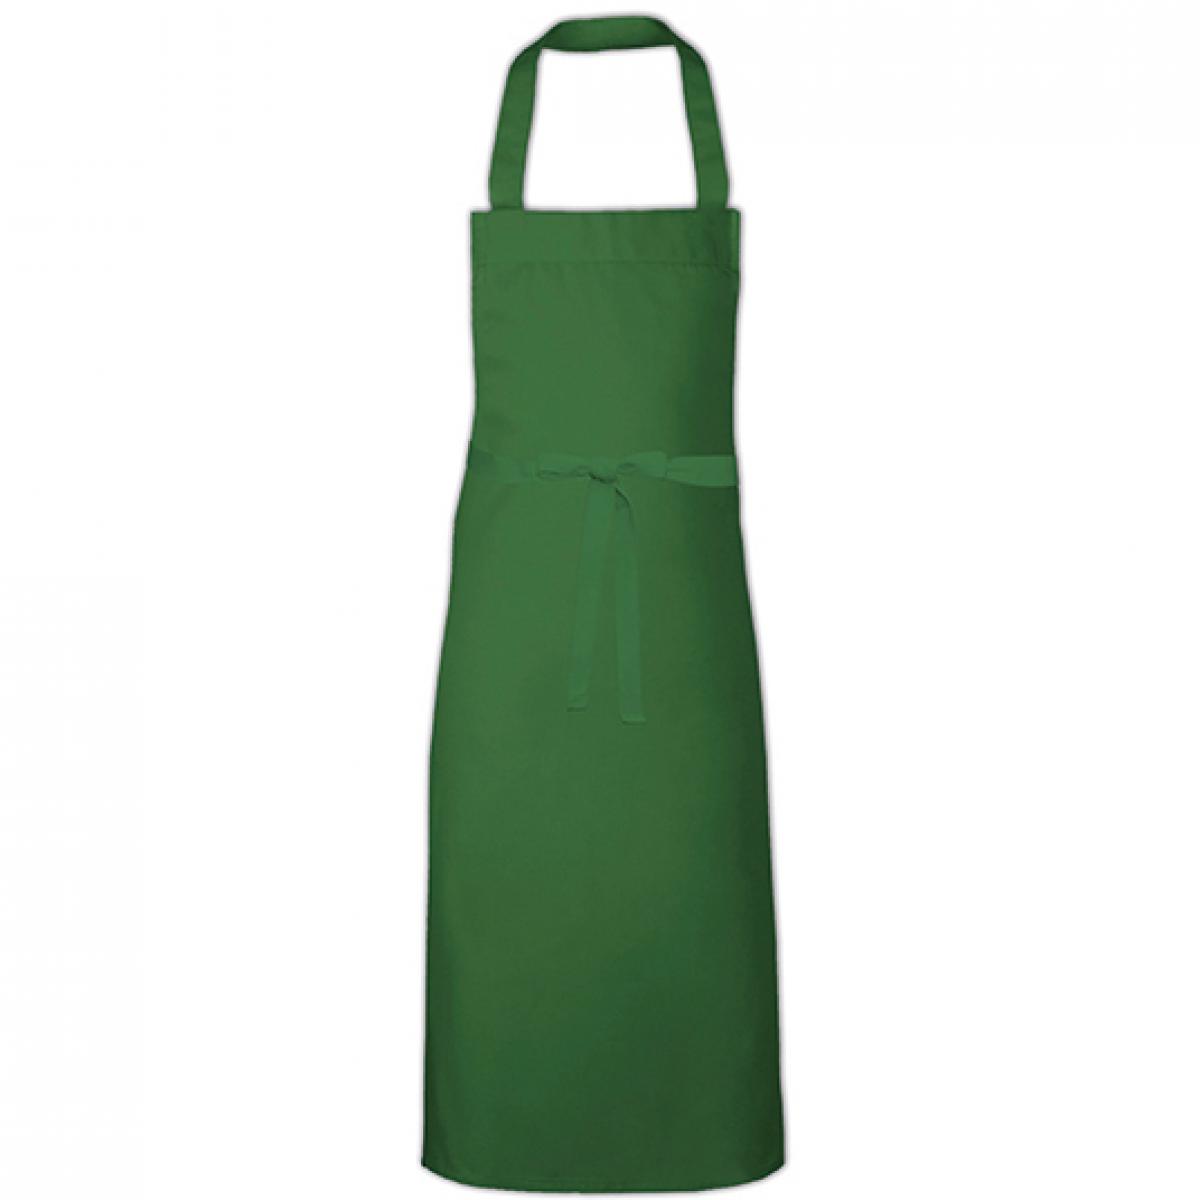 Hersteller: Link Kitchen Wear Herstellernummer: BBQ11073 Artikelbezeichnung: Barbecue Apron XL - 73 x 110 cm - Waschbar bis 60 °C Farbe: Bottle